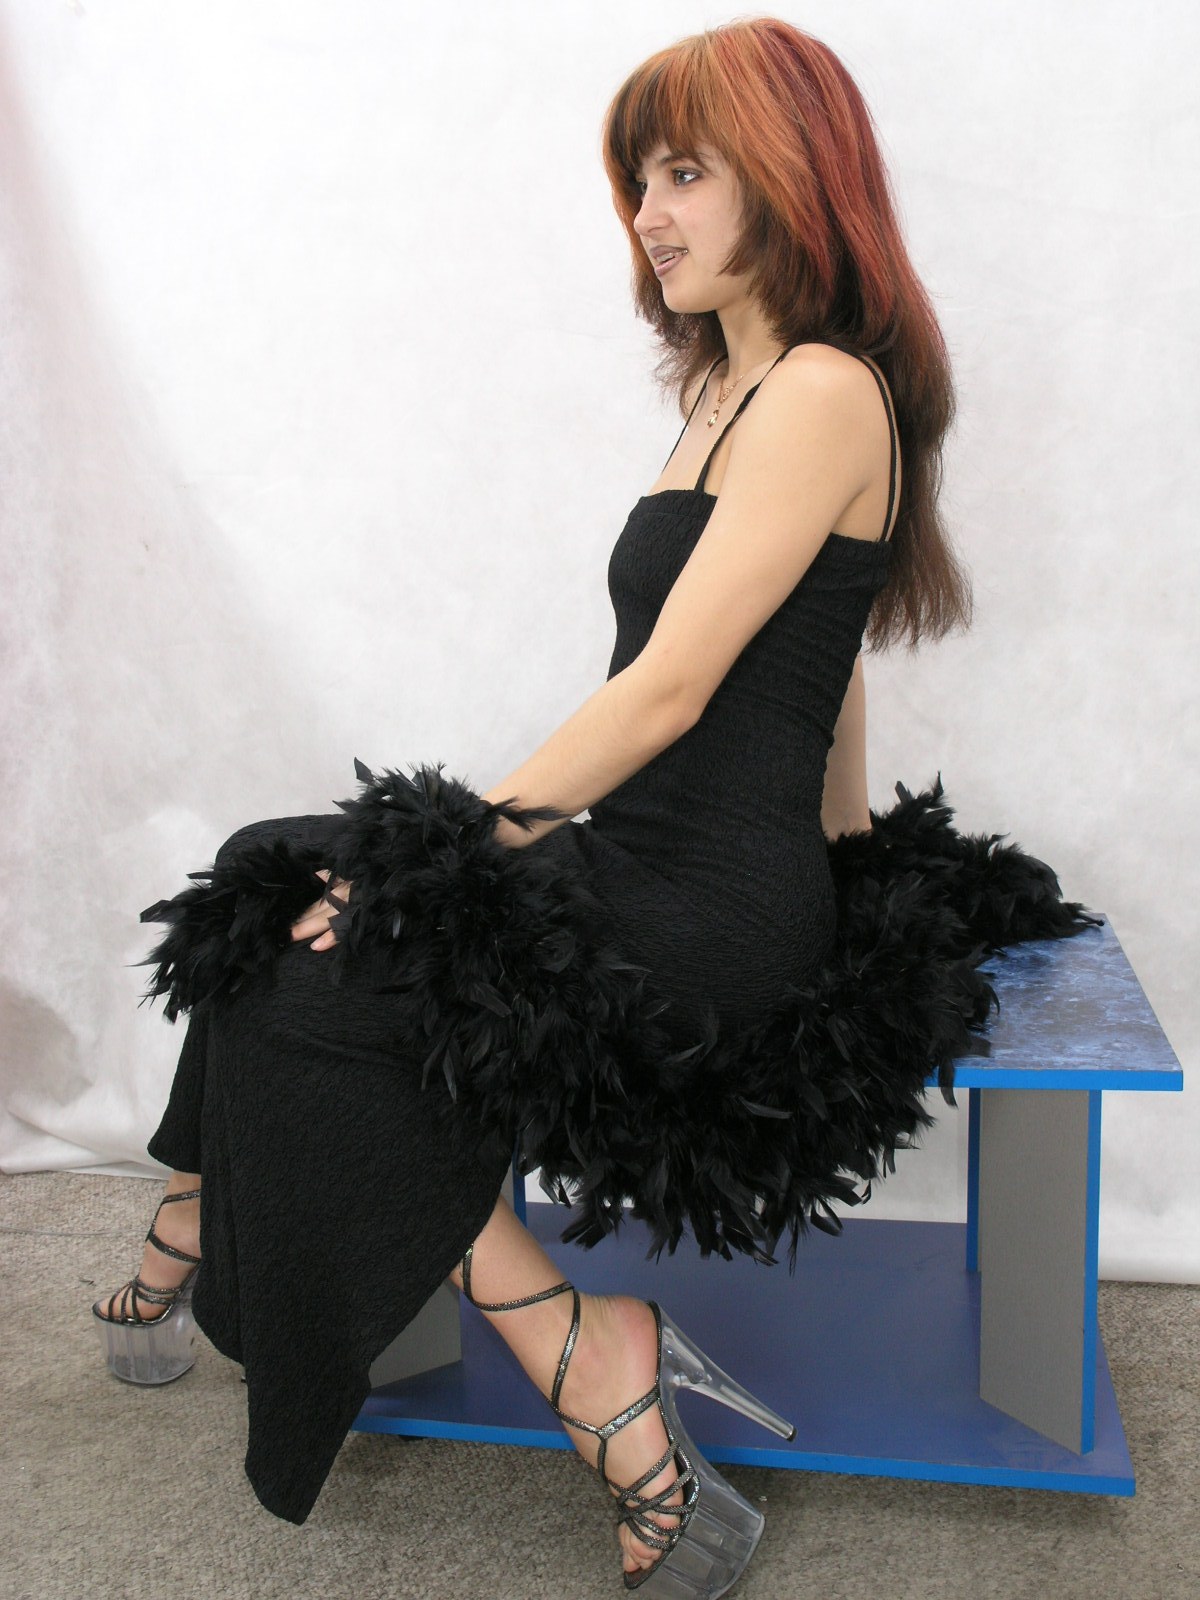 Redhead hottie in black dress